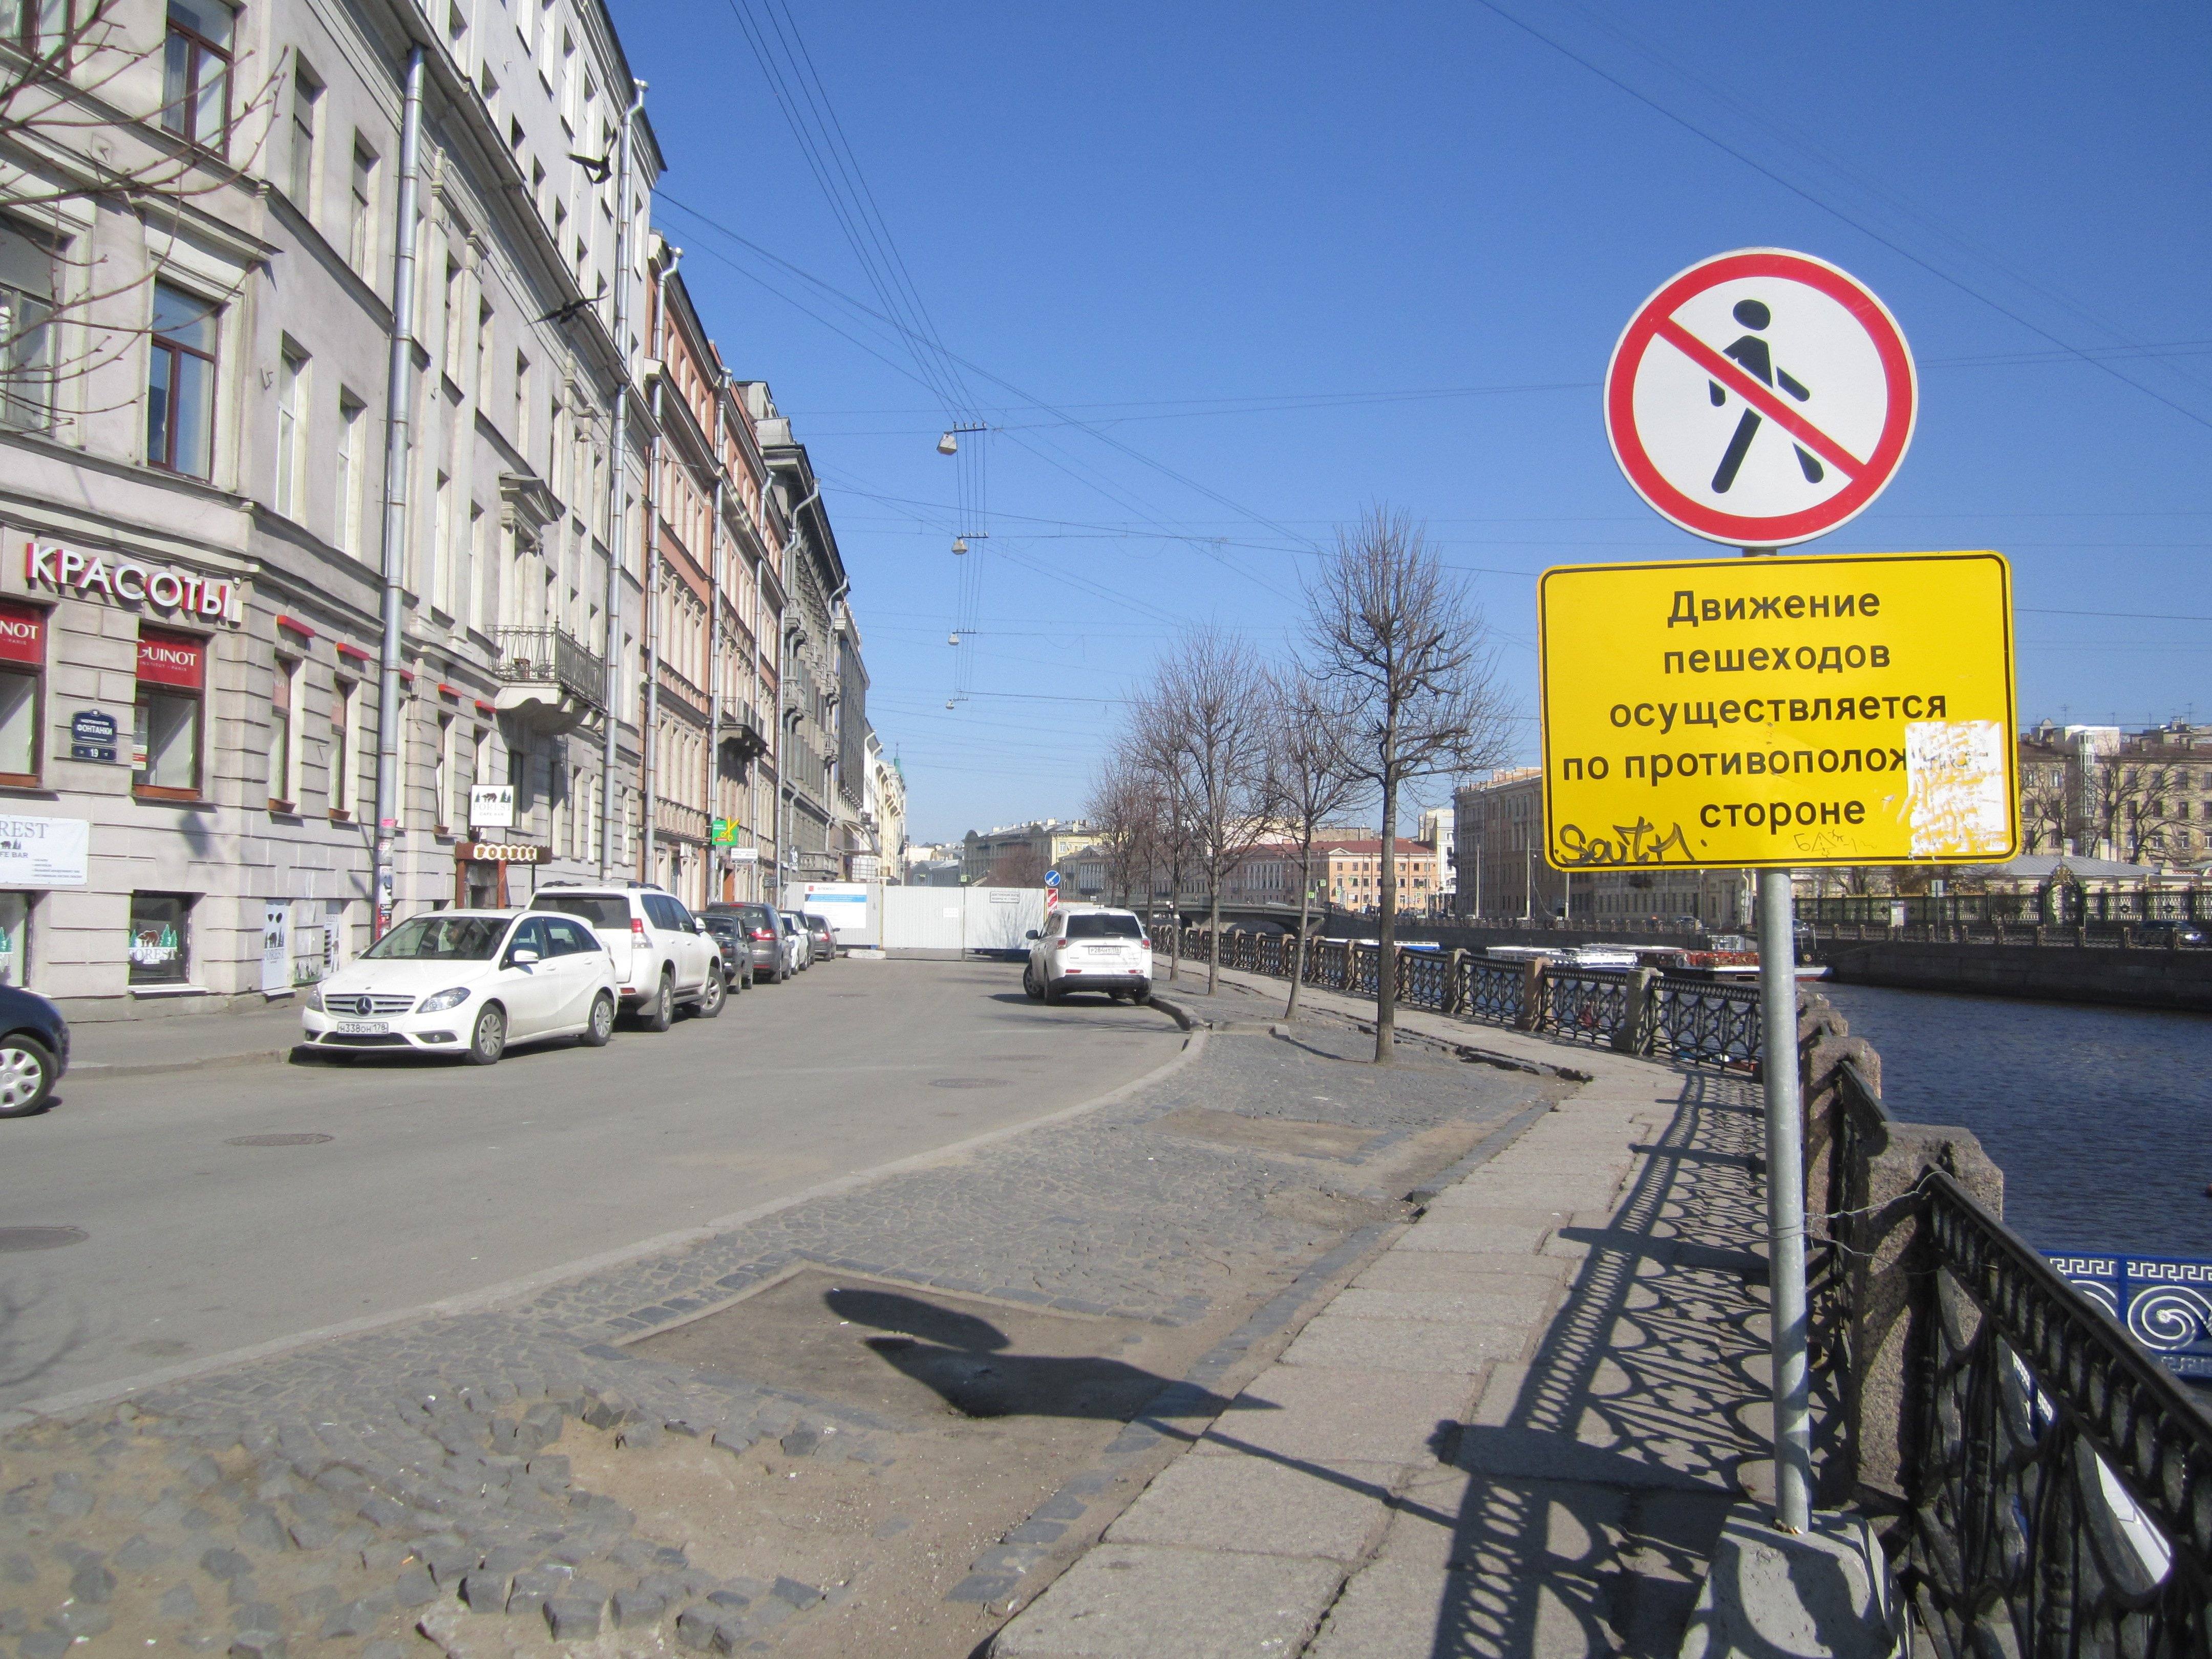 Передвижения запрещены. Знак движение пешеходов запрещено. 3.10 Движение пешеходов запрещено. Пешеходам проход запрещен. Запрещение пешеходного движения.